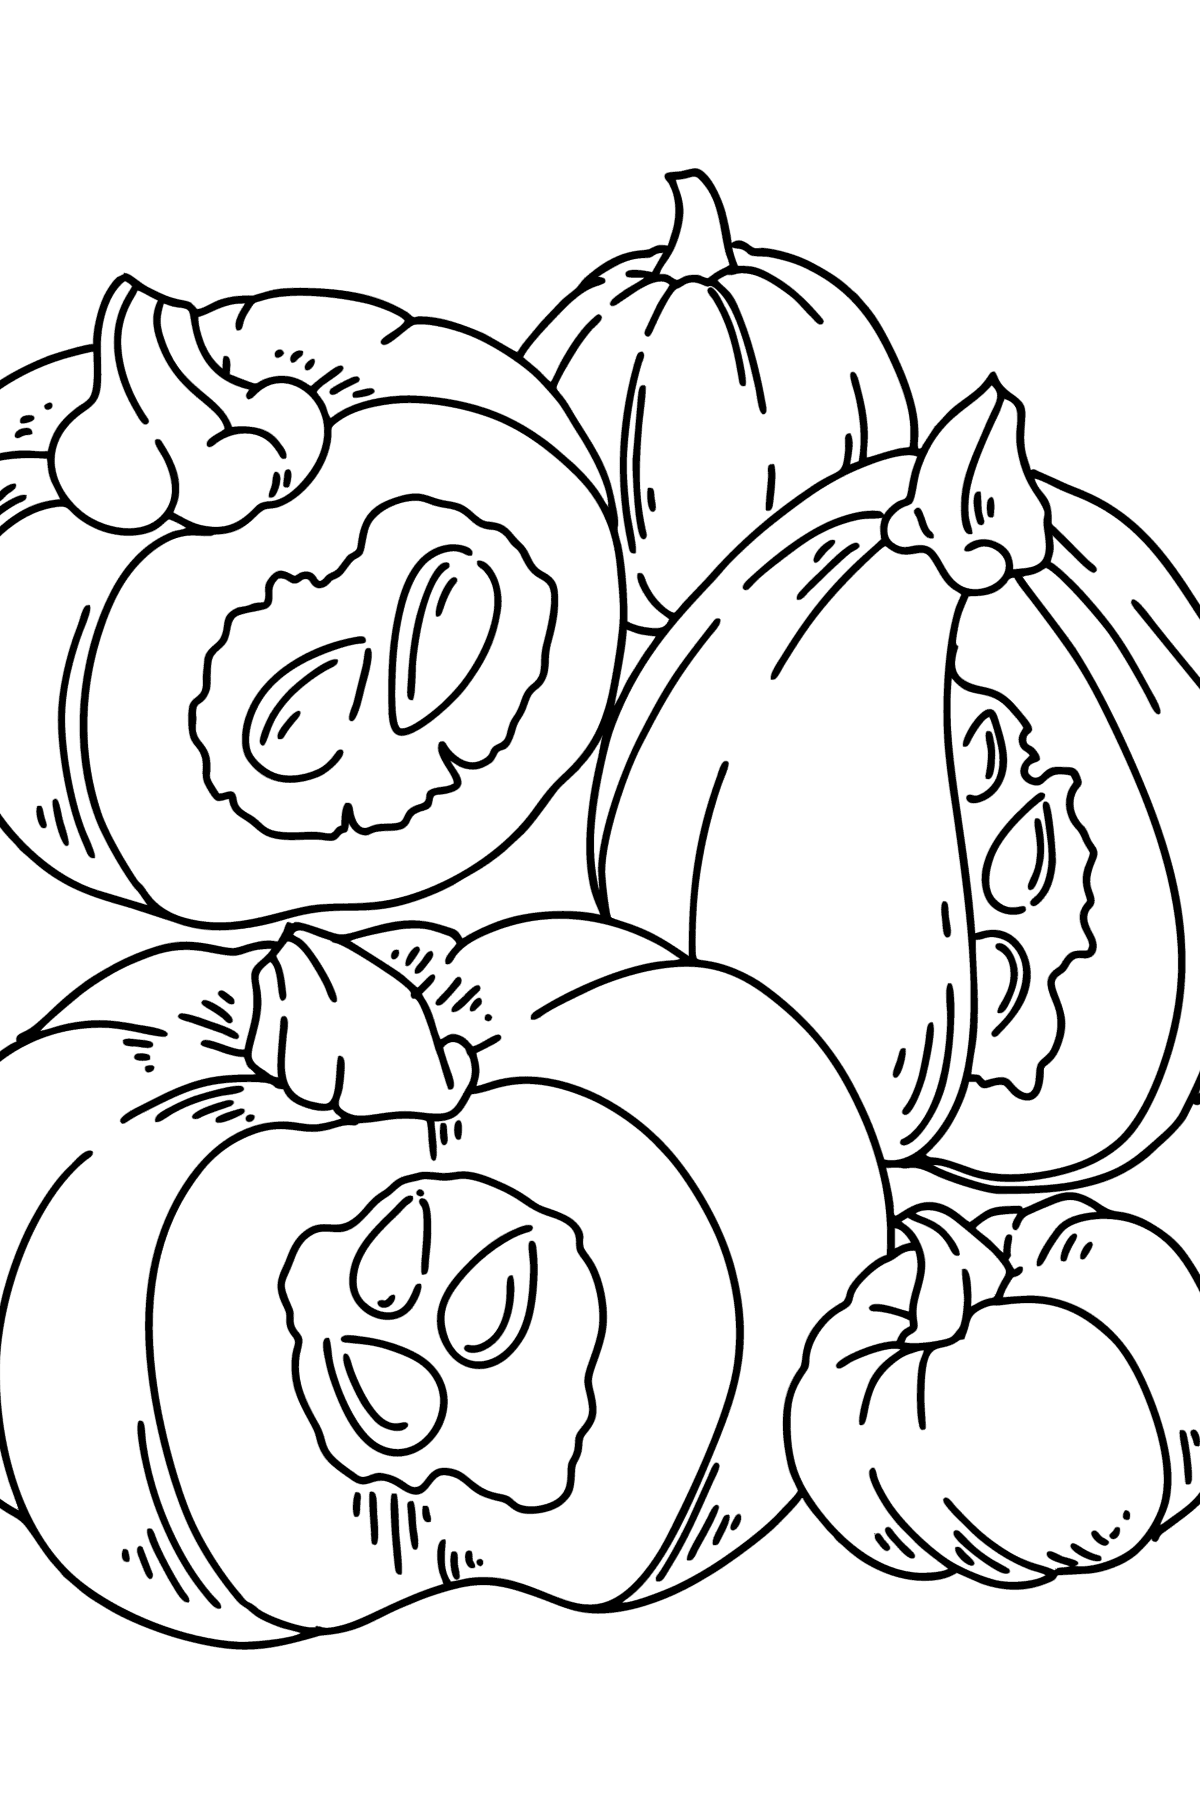 Desenho para colorir Outono - Colheita de abóbora - Imagens para Colorir para Crianças